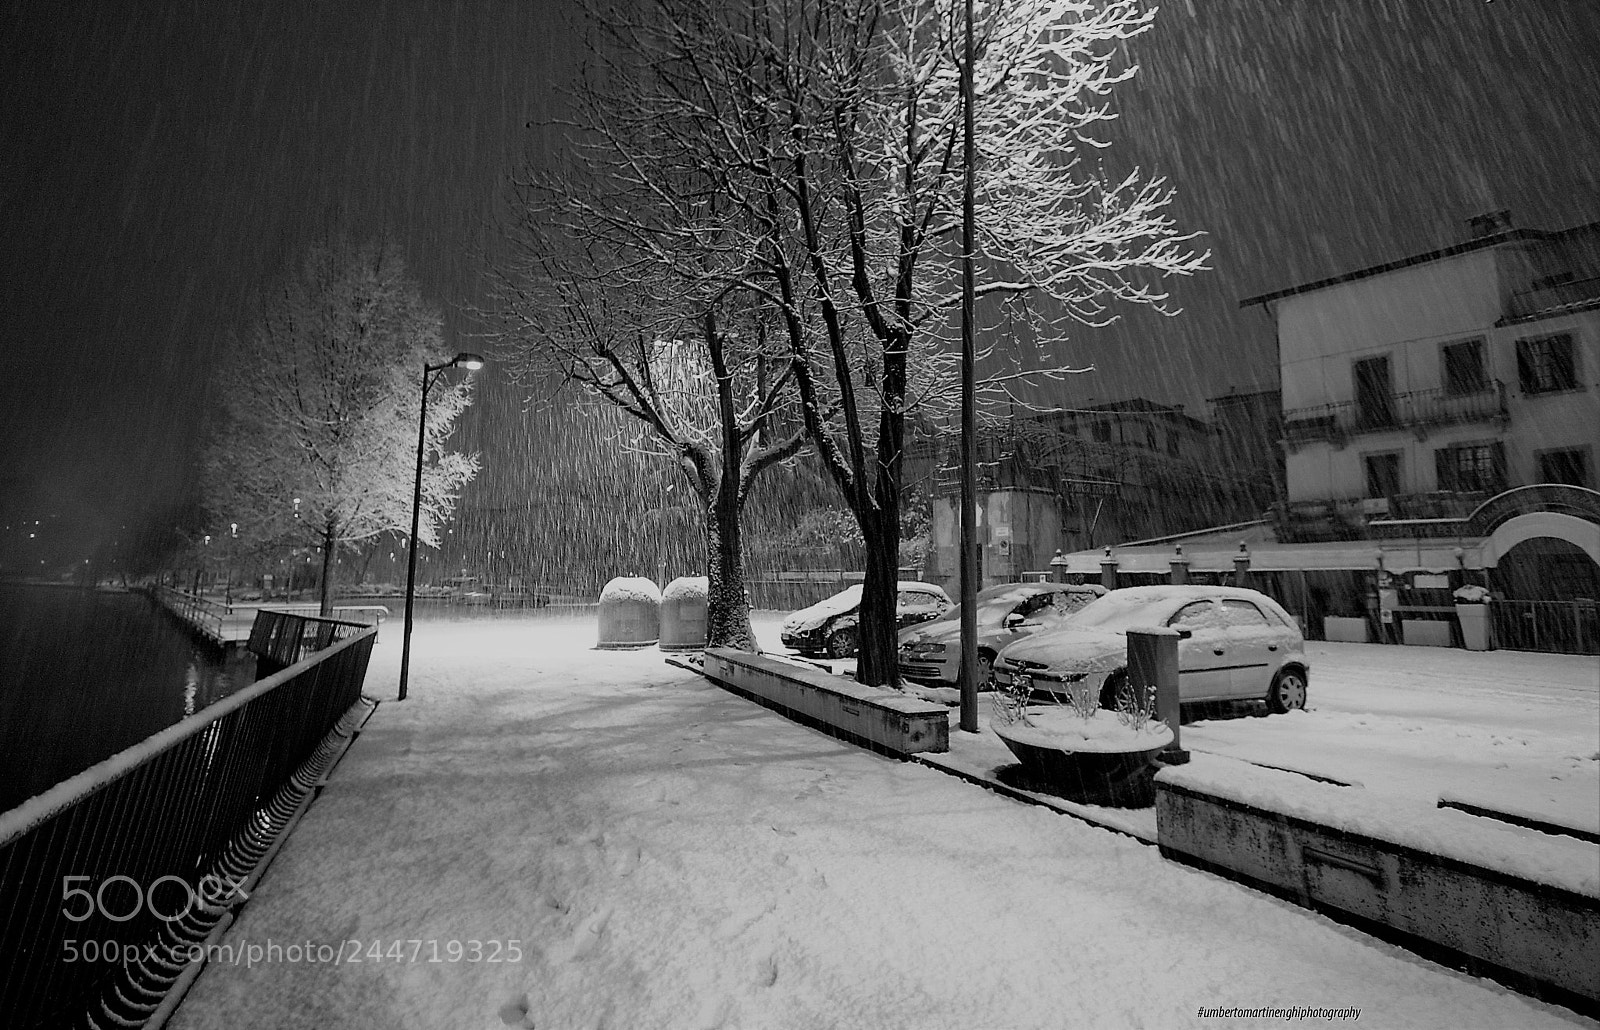 Canon EOS 40D sample photo. Snowfall photography